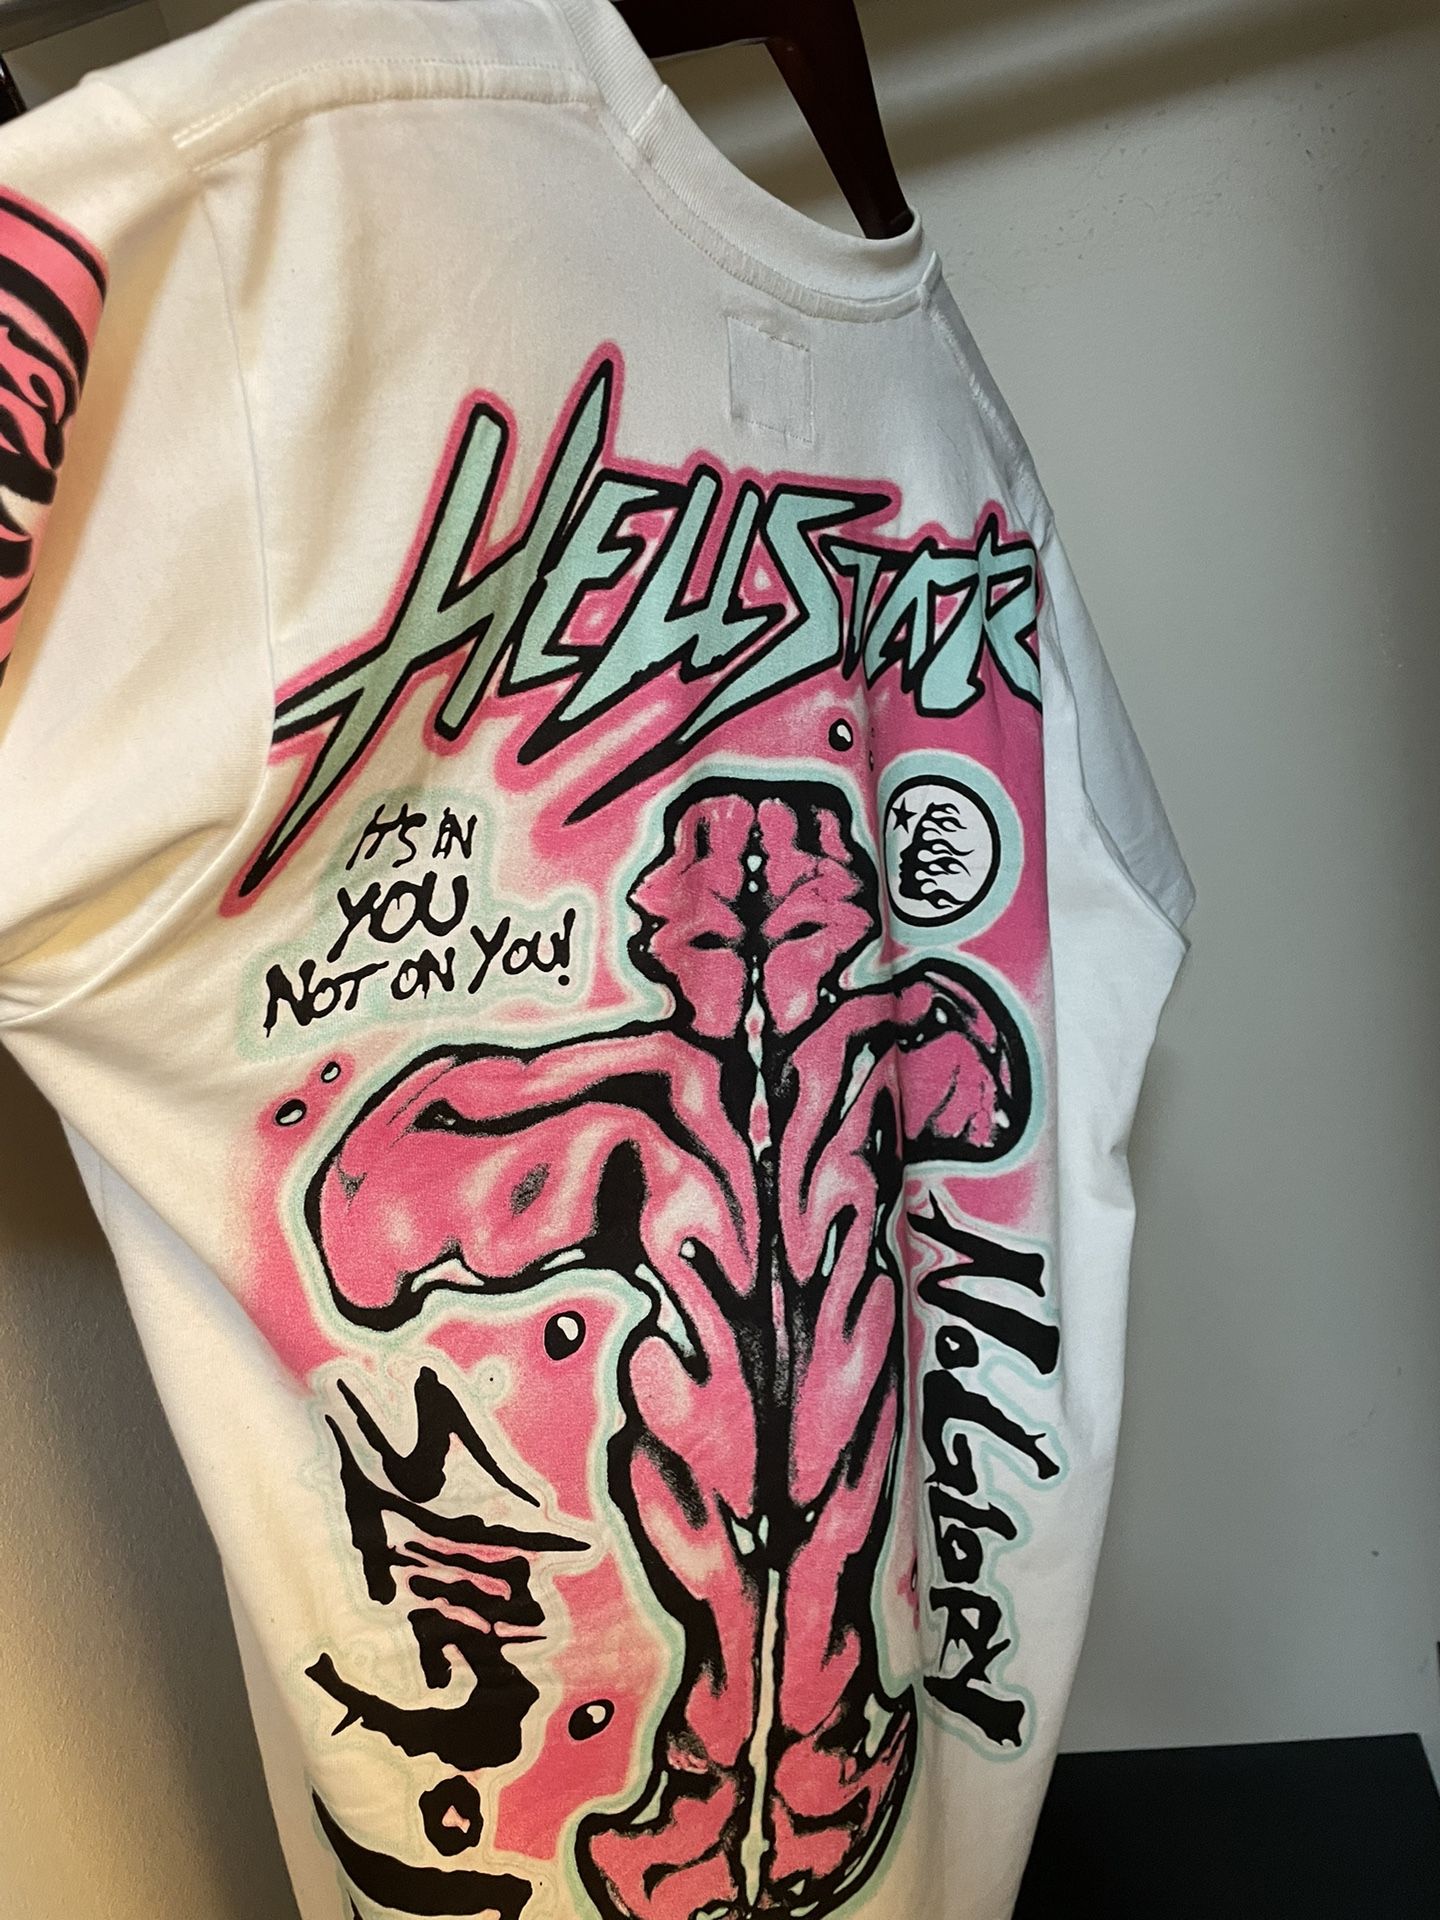 Pink Hellstar Shirt 